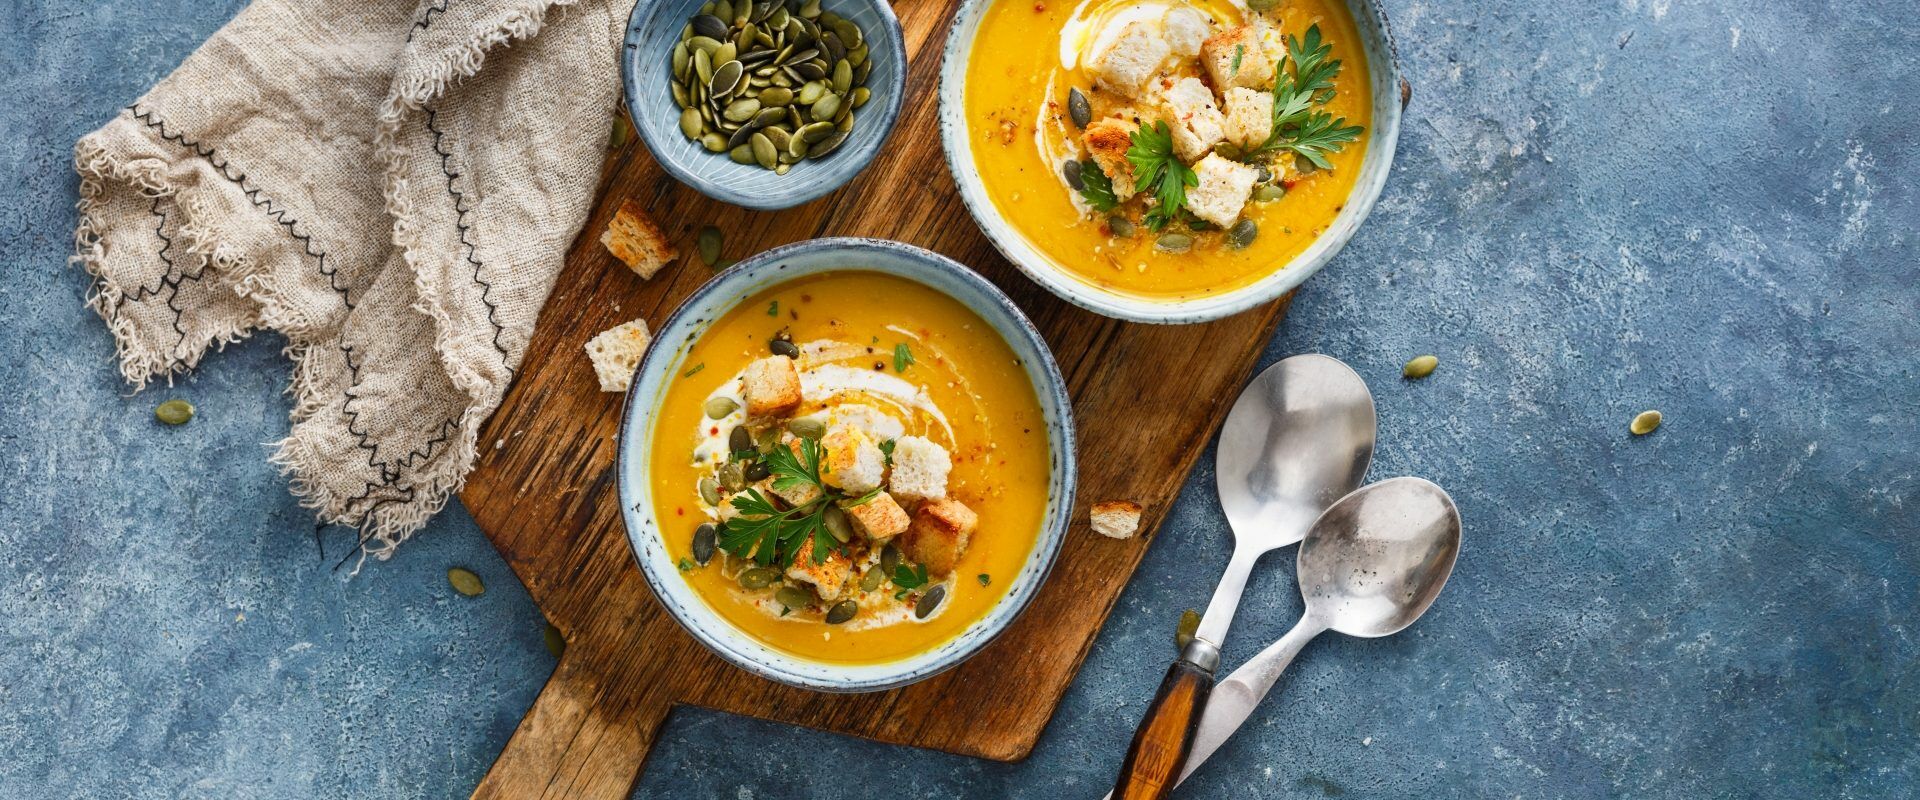 Zupy wegetariańskie i wegańskie wzmacniające organizm. Sprawdź przepisy na najlepsze zupy warzywne na odporność.